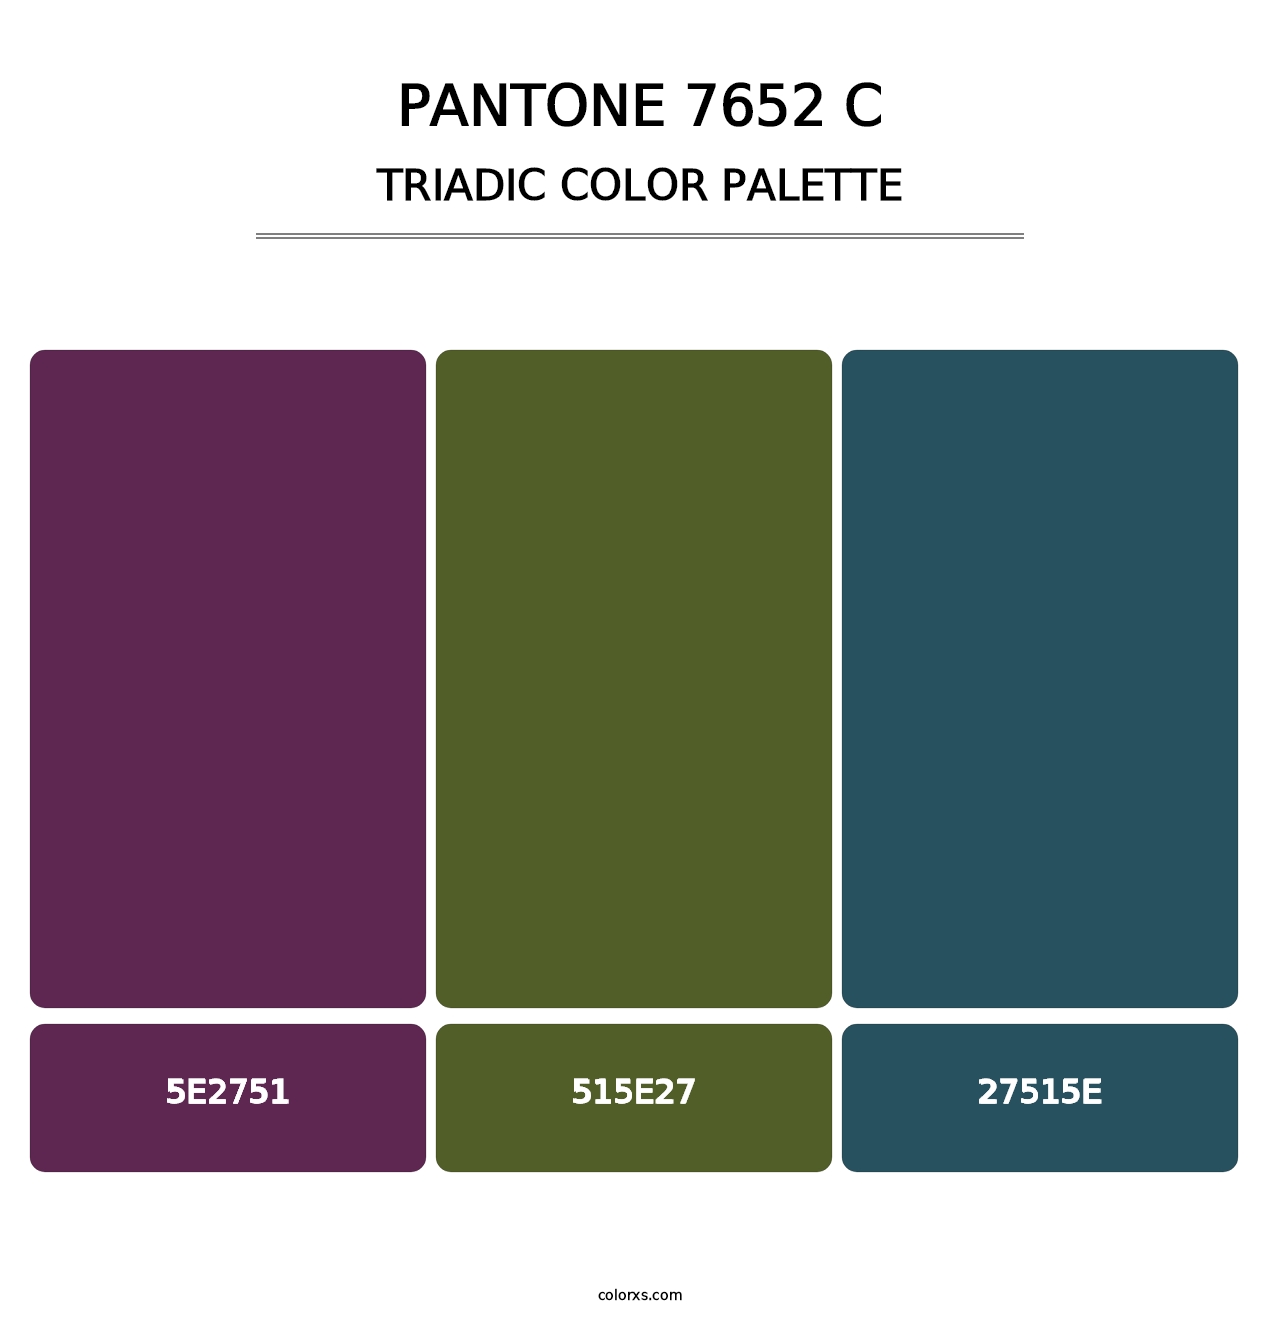 PANTONE 7652 C - Triadic Color Palette